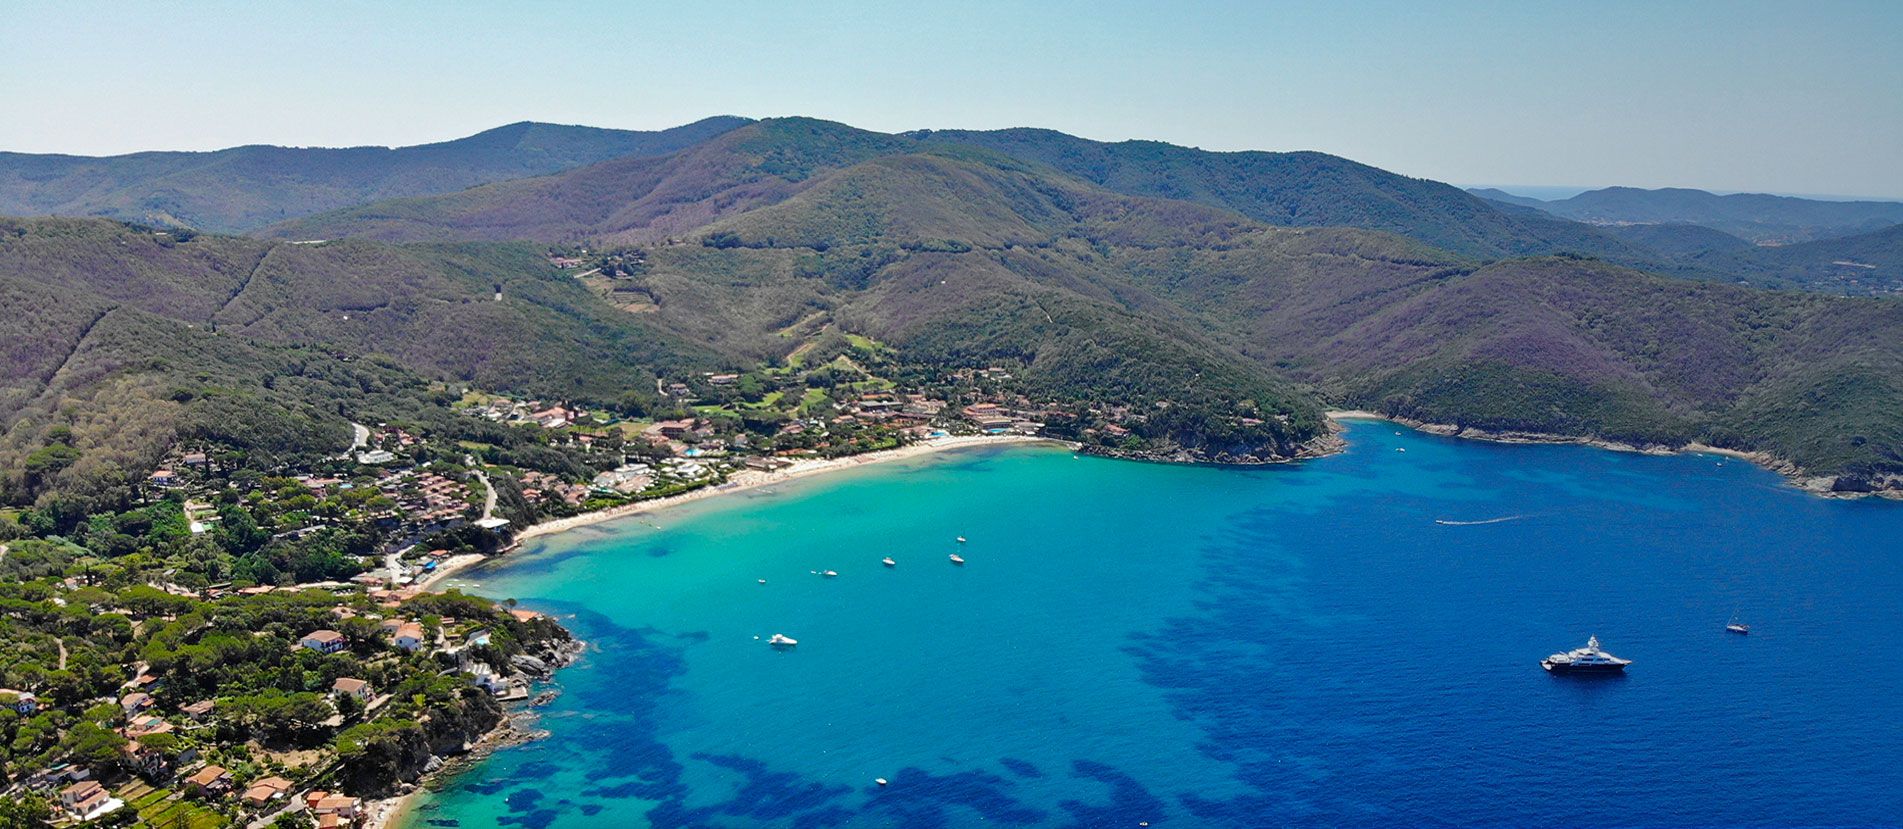 Het eiland Elba en zijn prachtige stranden